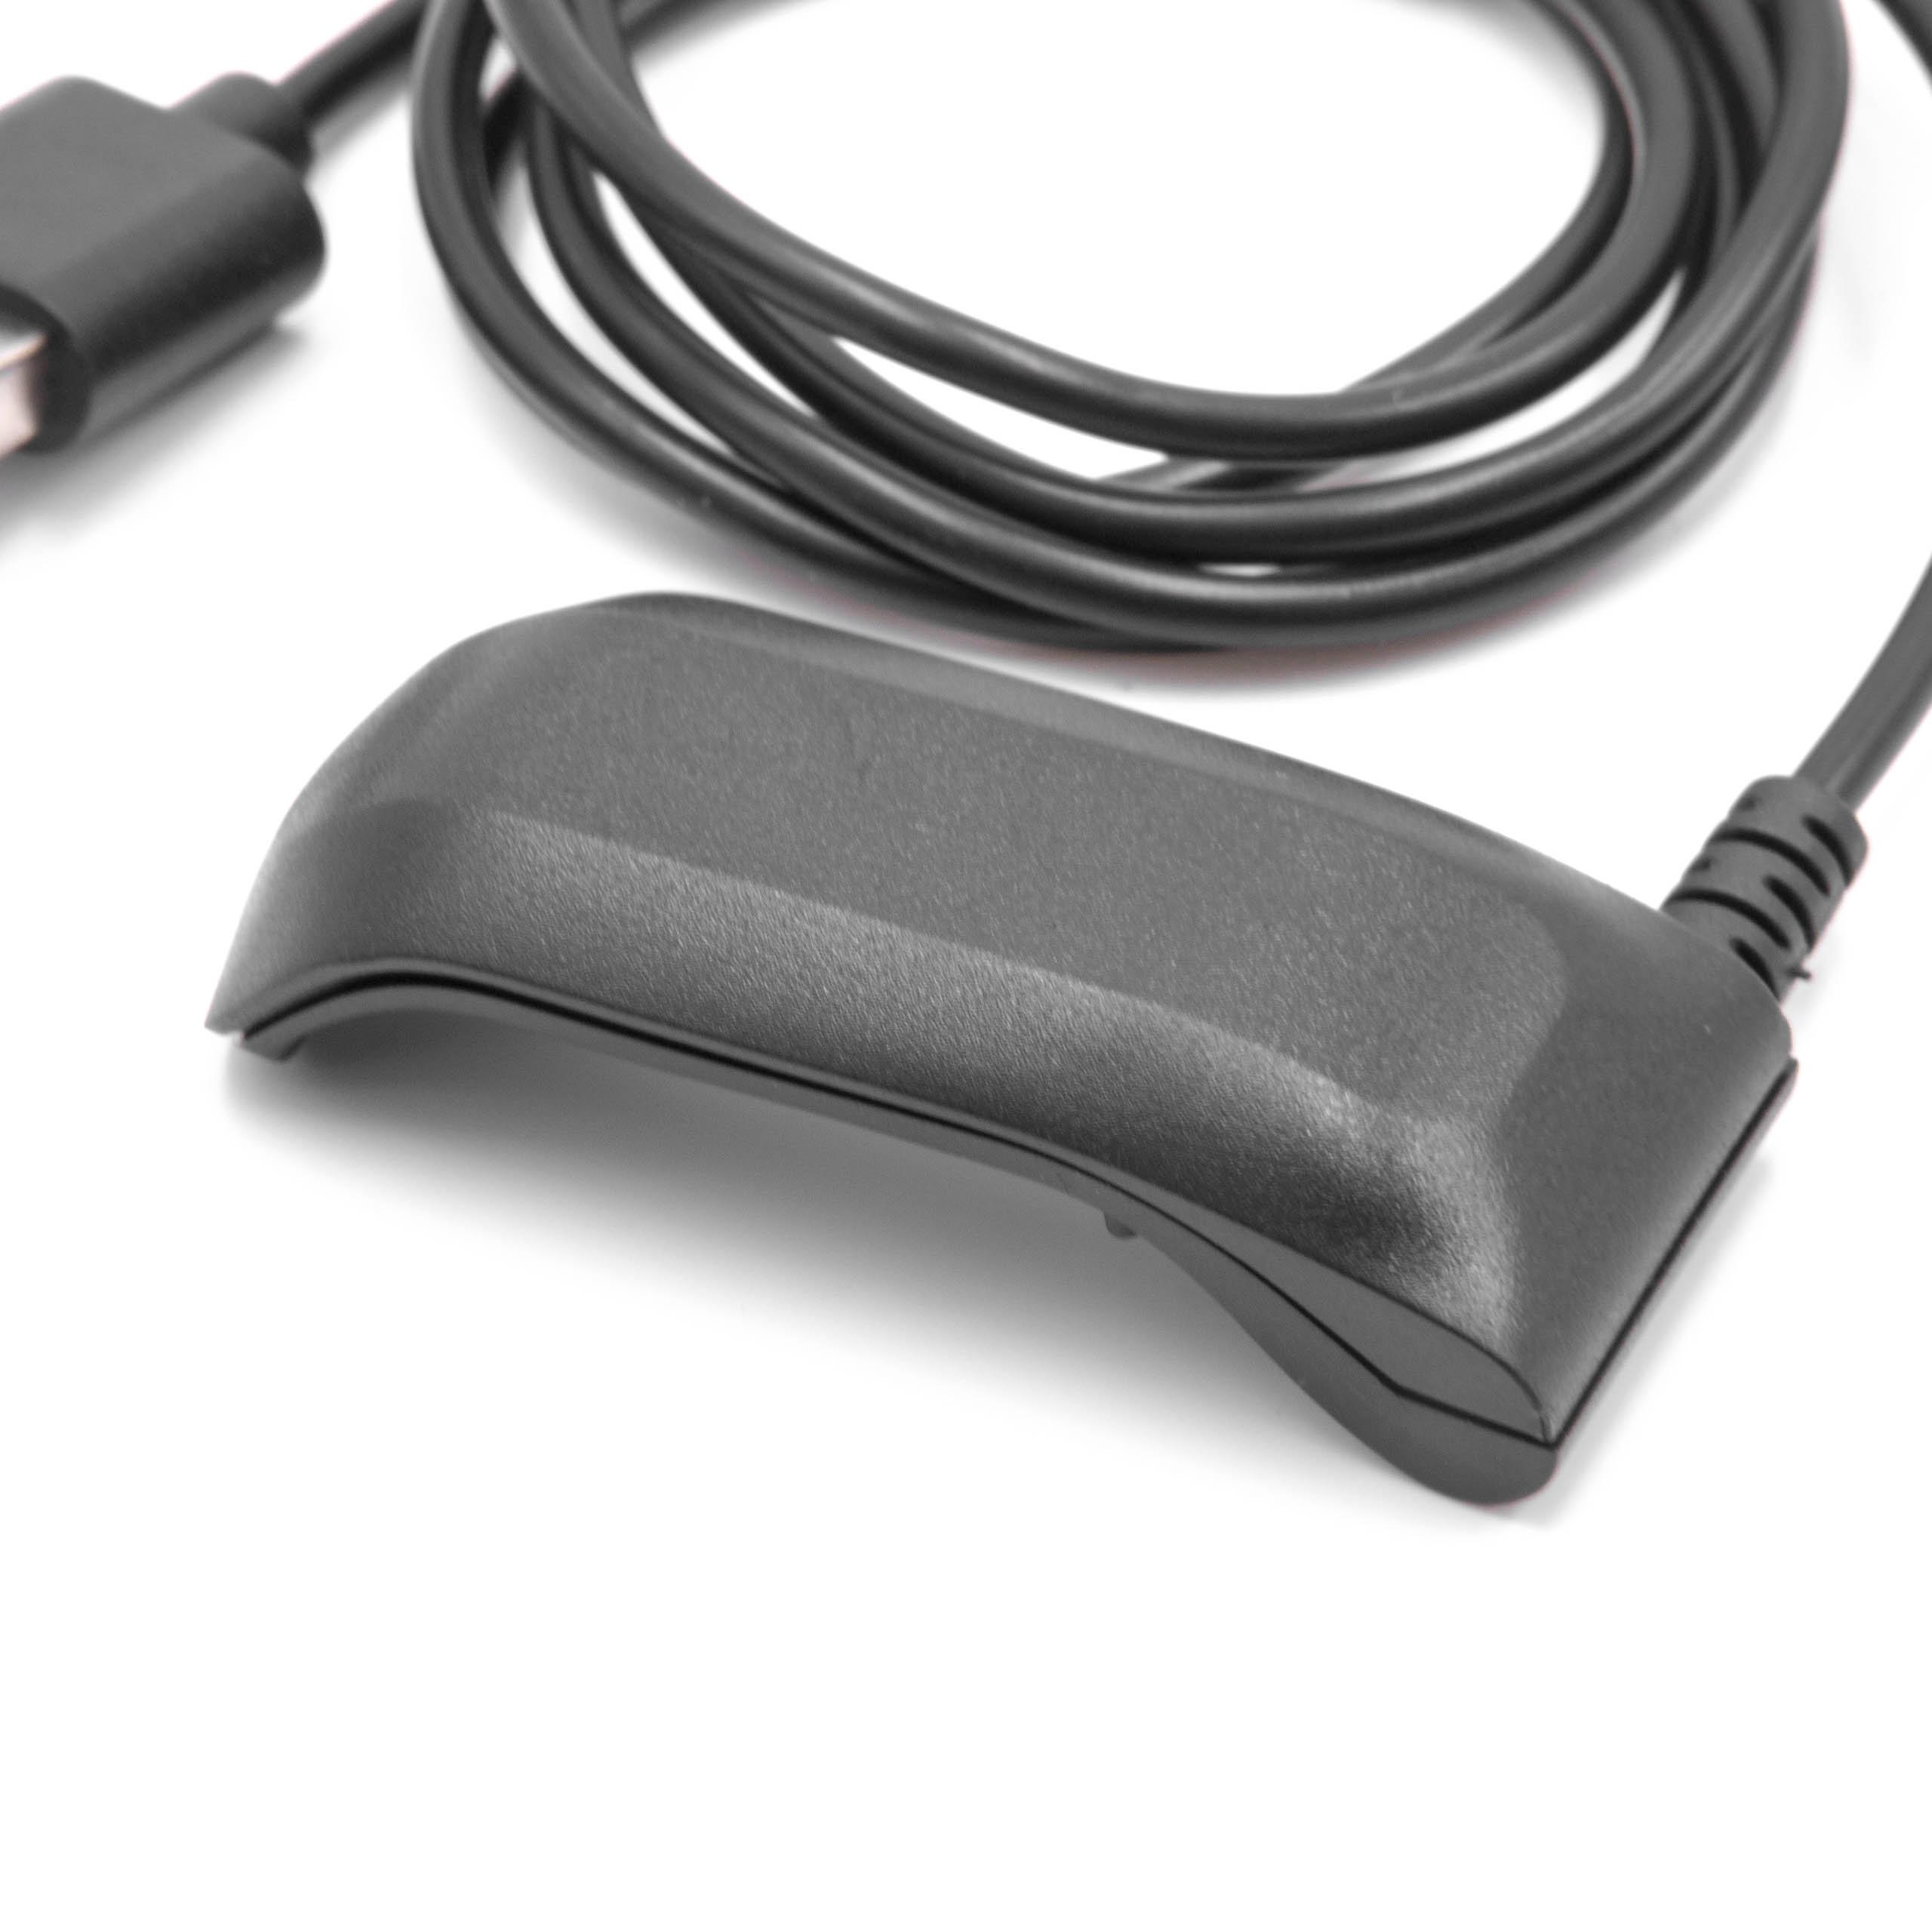 Cable de carga USB para smartwatch Garmin Forerunner 610 - negro 100 cm